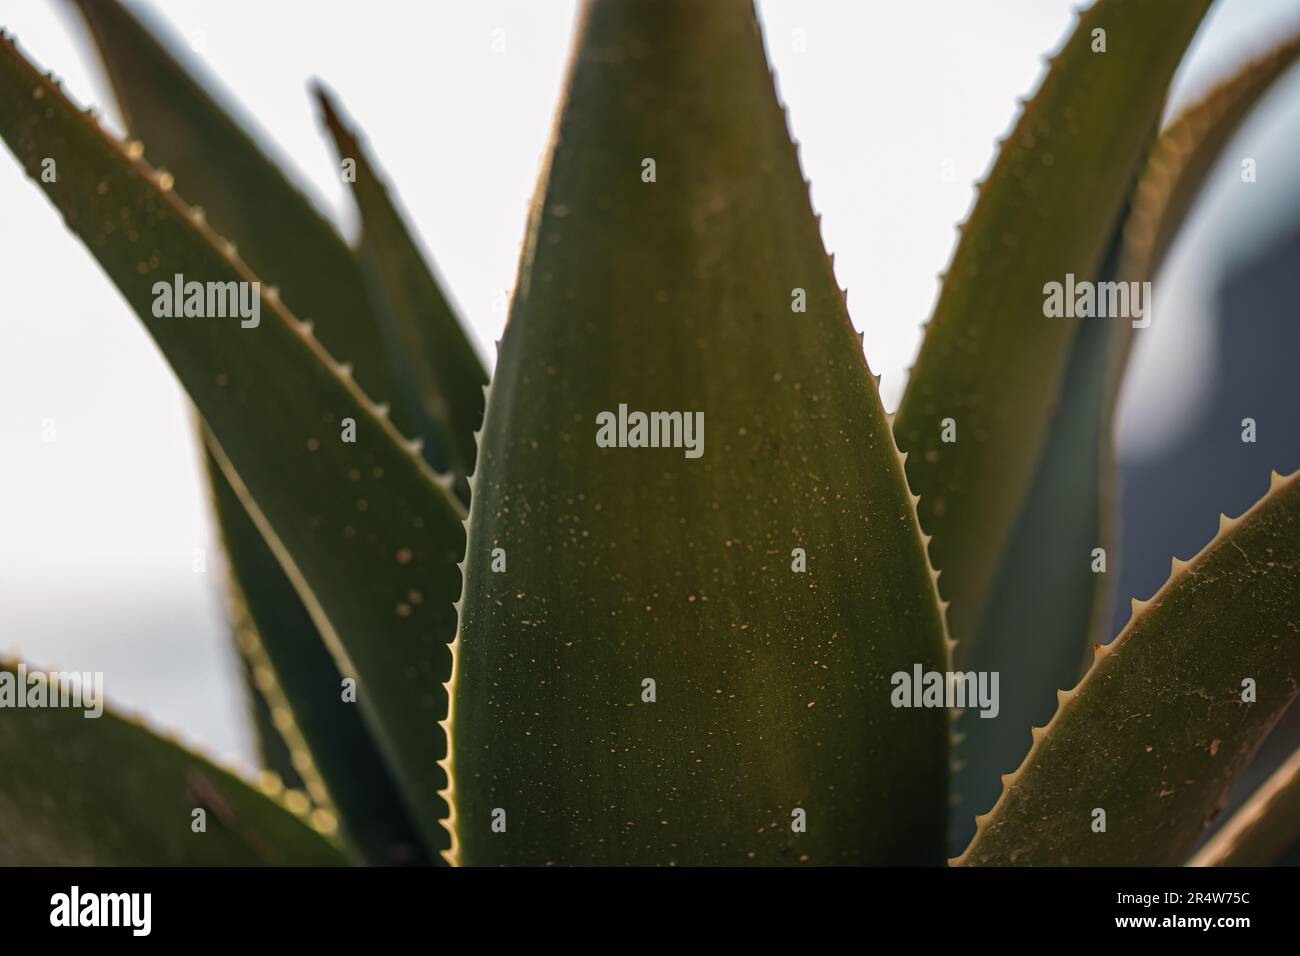 green and thorny Aloe vera plant Stock Photo